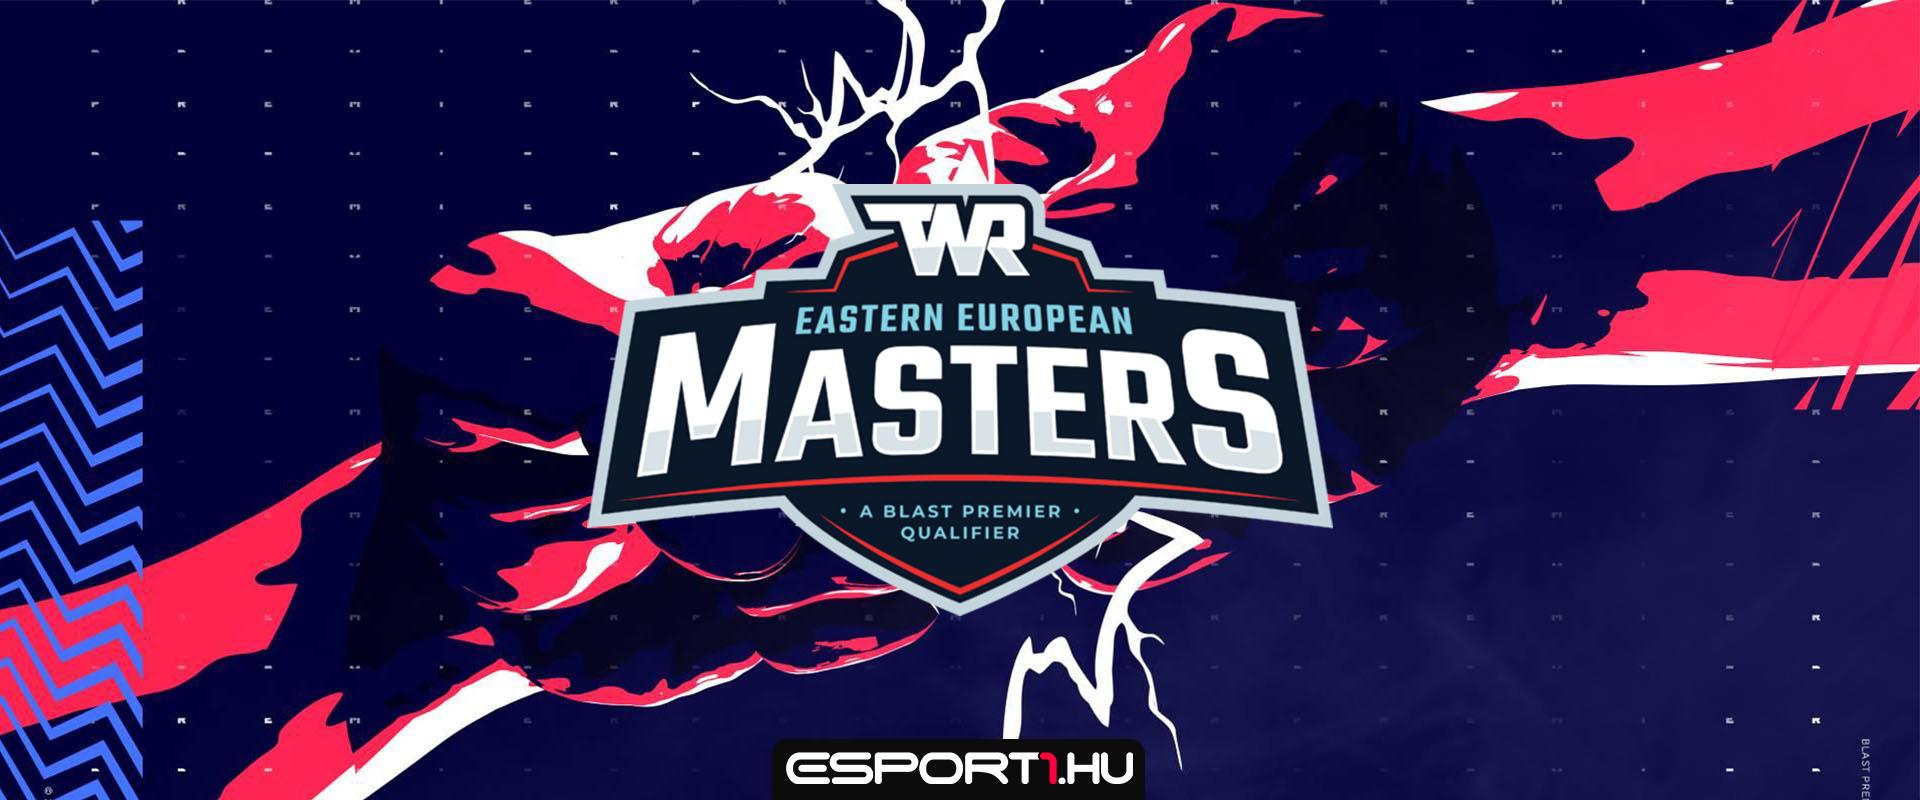 TWR Eastern European Masters: koszovói csapat lett a régió legjobbja!